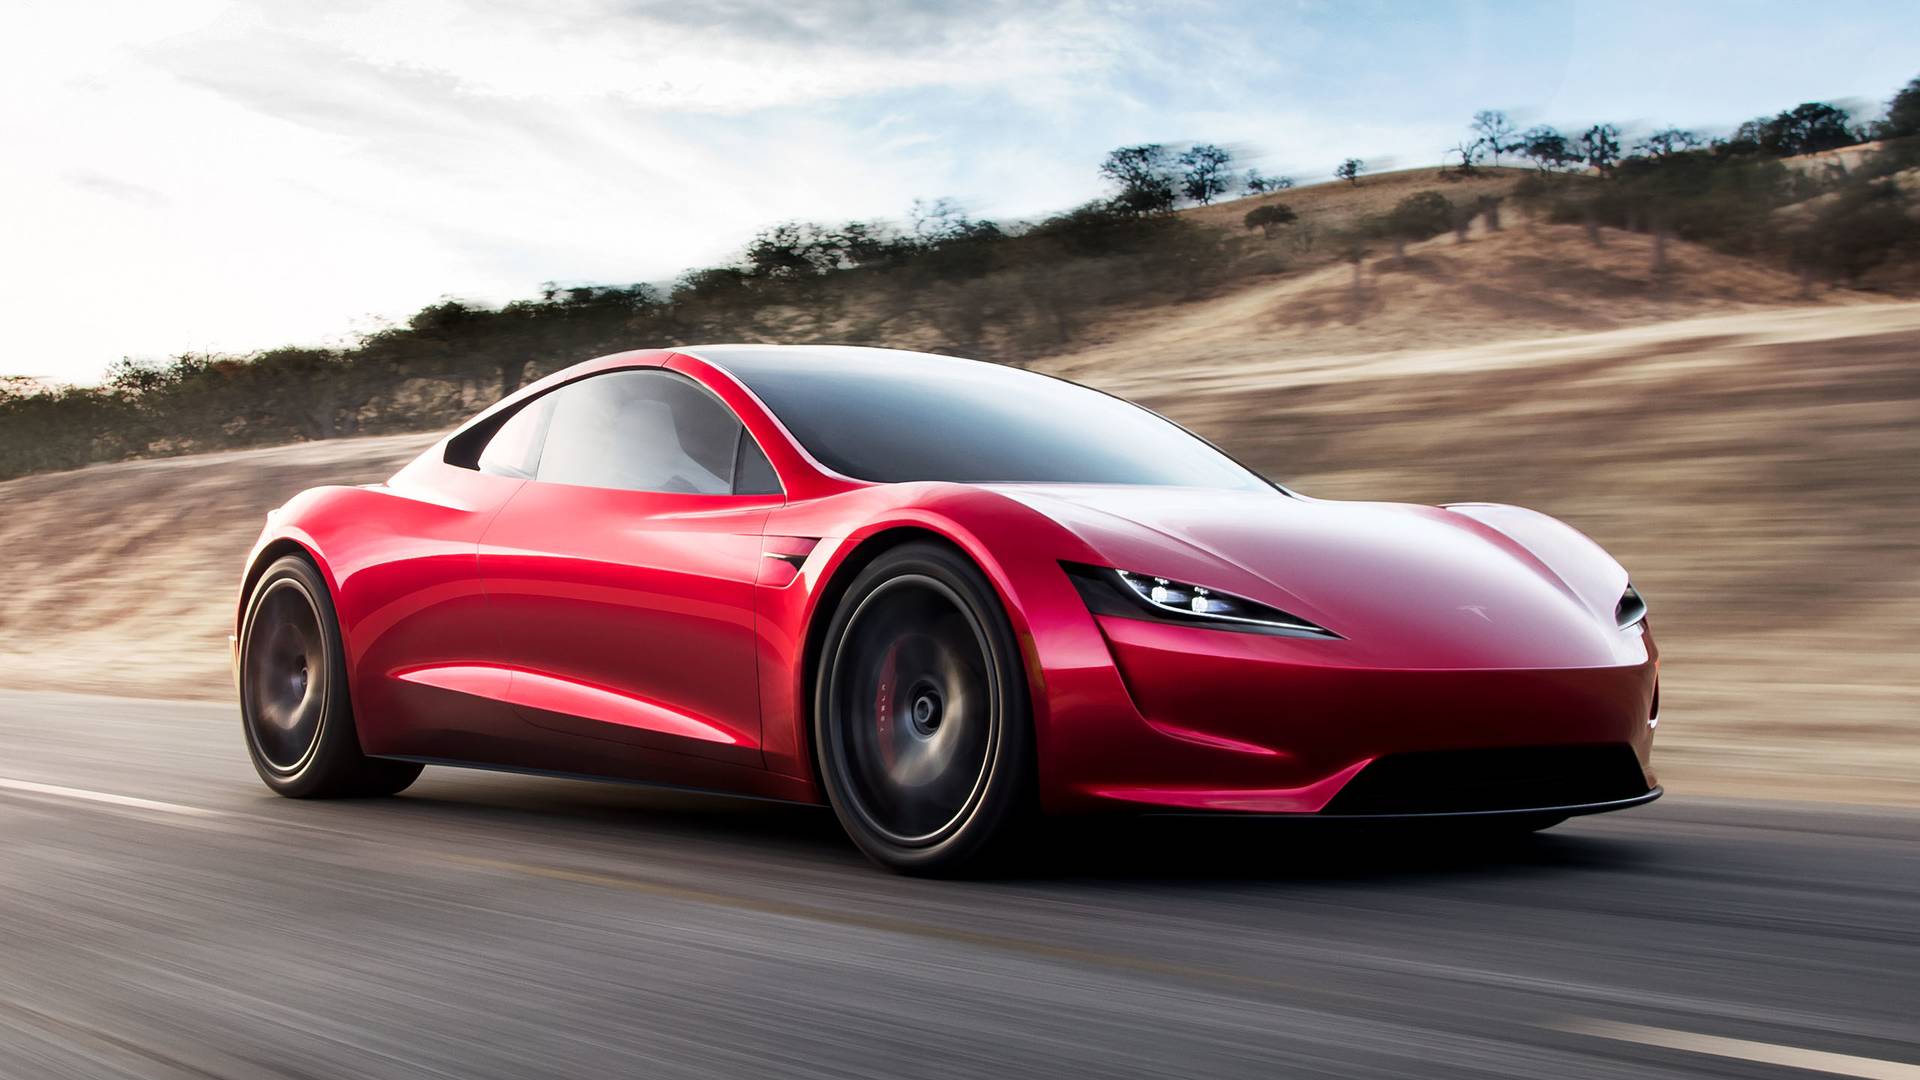 “Quái vật” điện Tesla Roadster trang bị công nghệ tên lửa, mất 1,1 giây để tăng tốc 0-100km/h? - Ảnh 2.